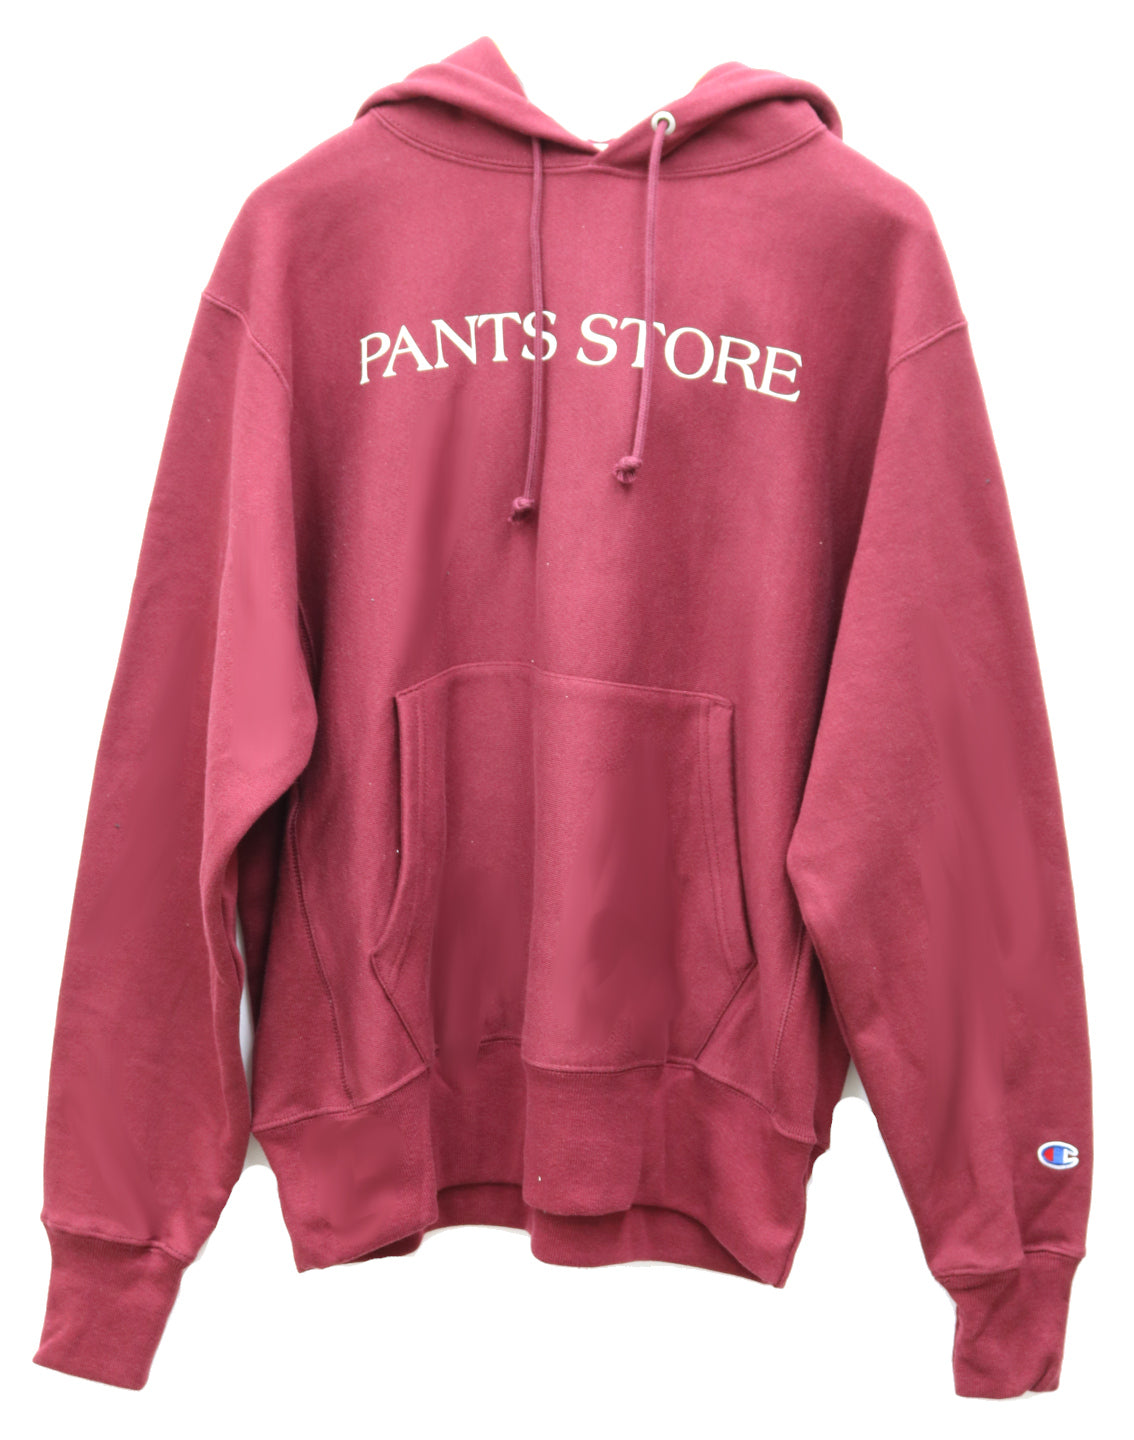 Pants Store Weave Hooded Sweatshirt